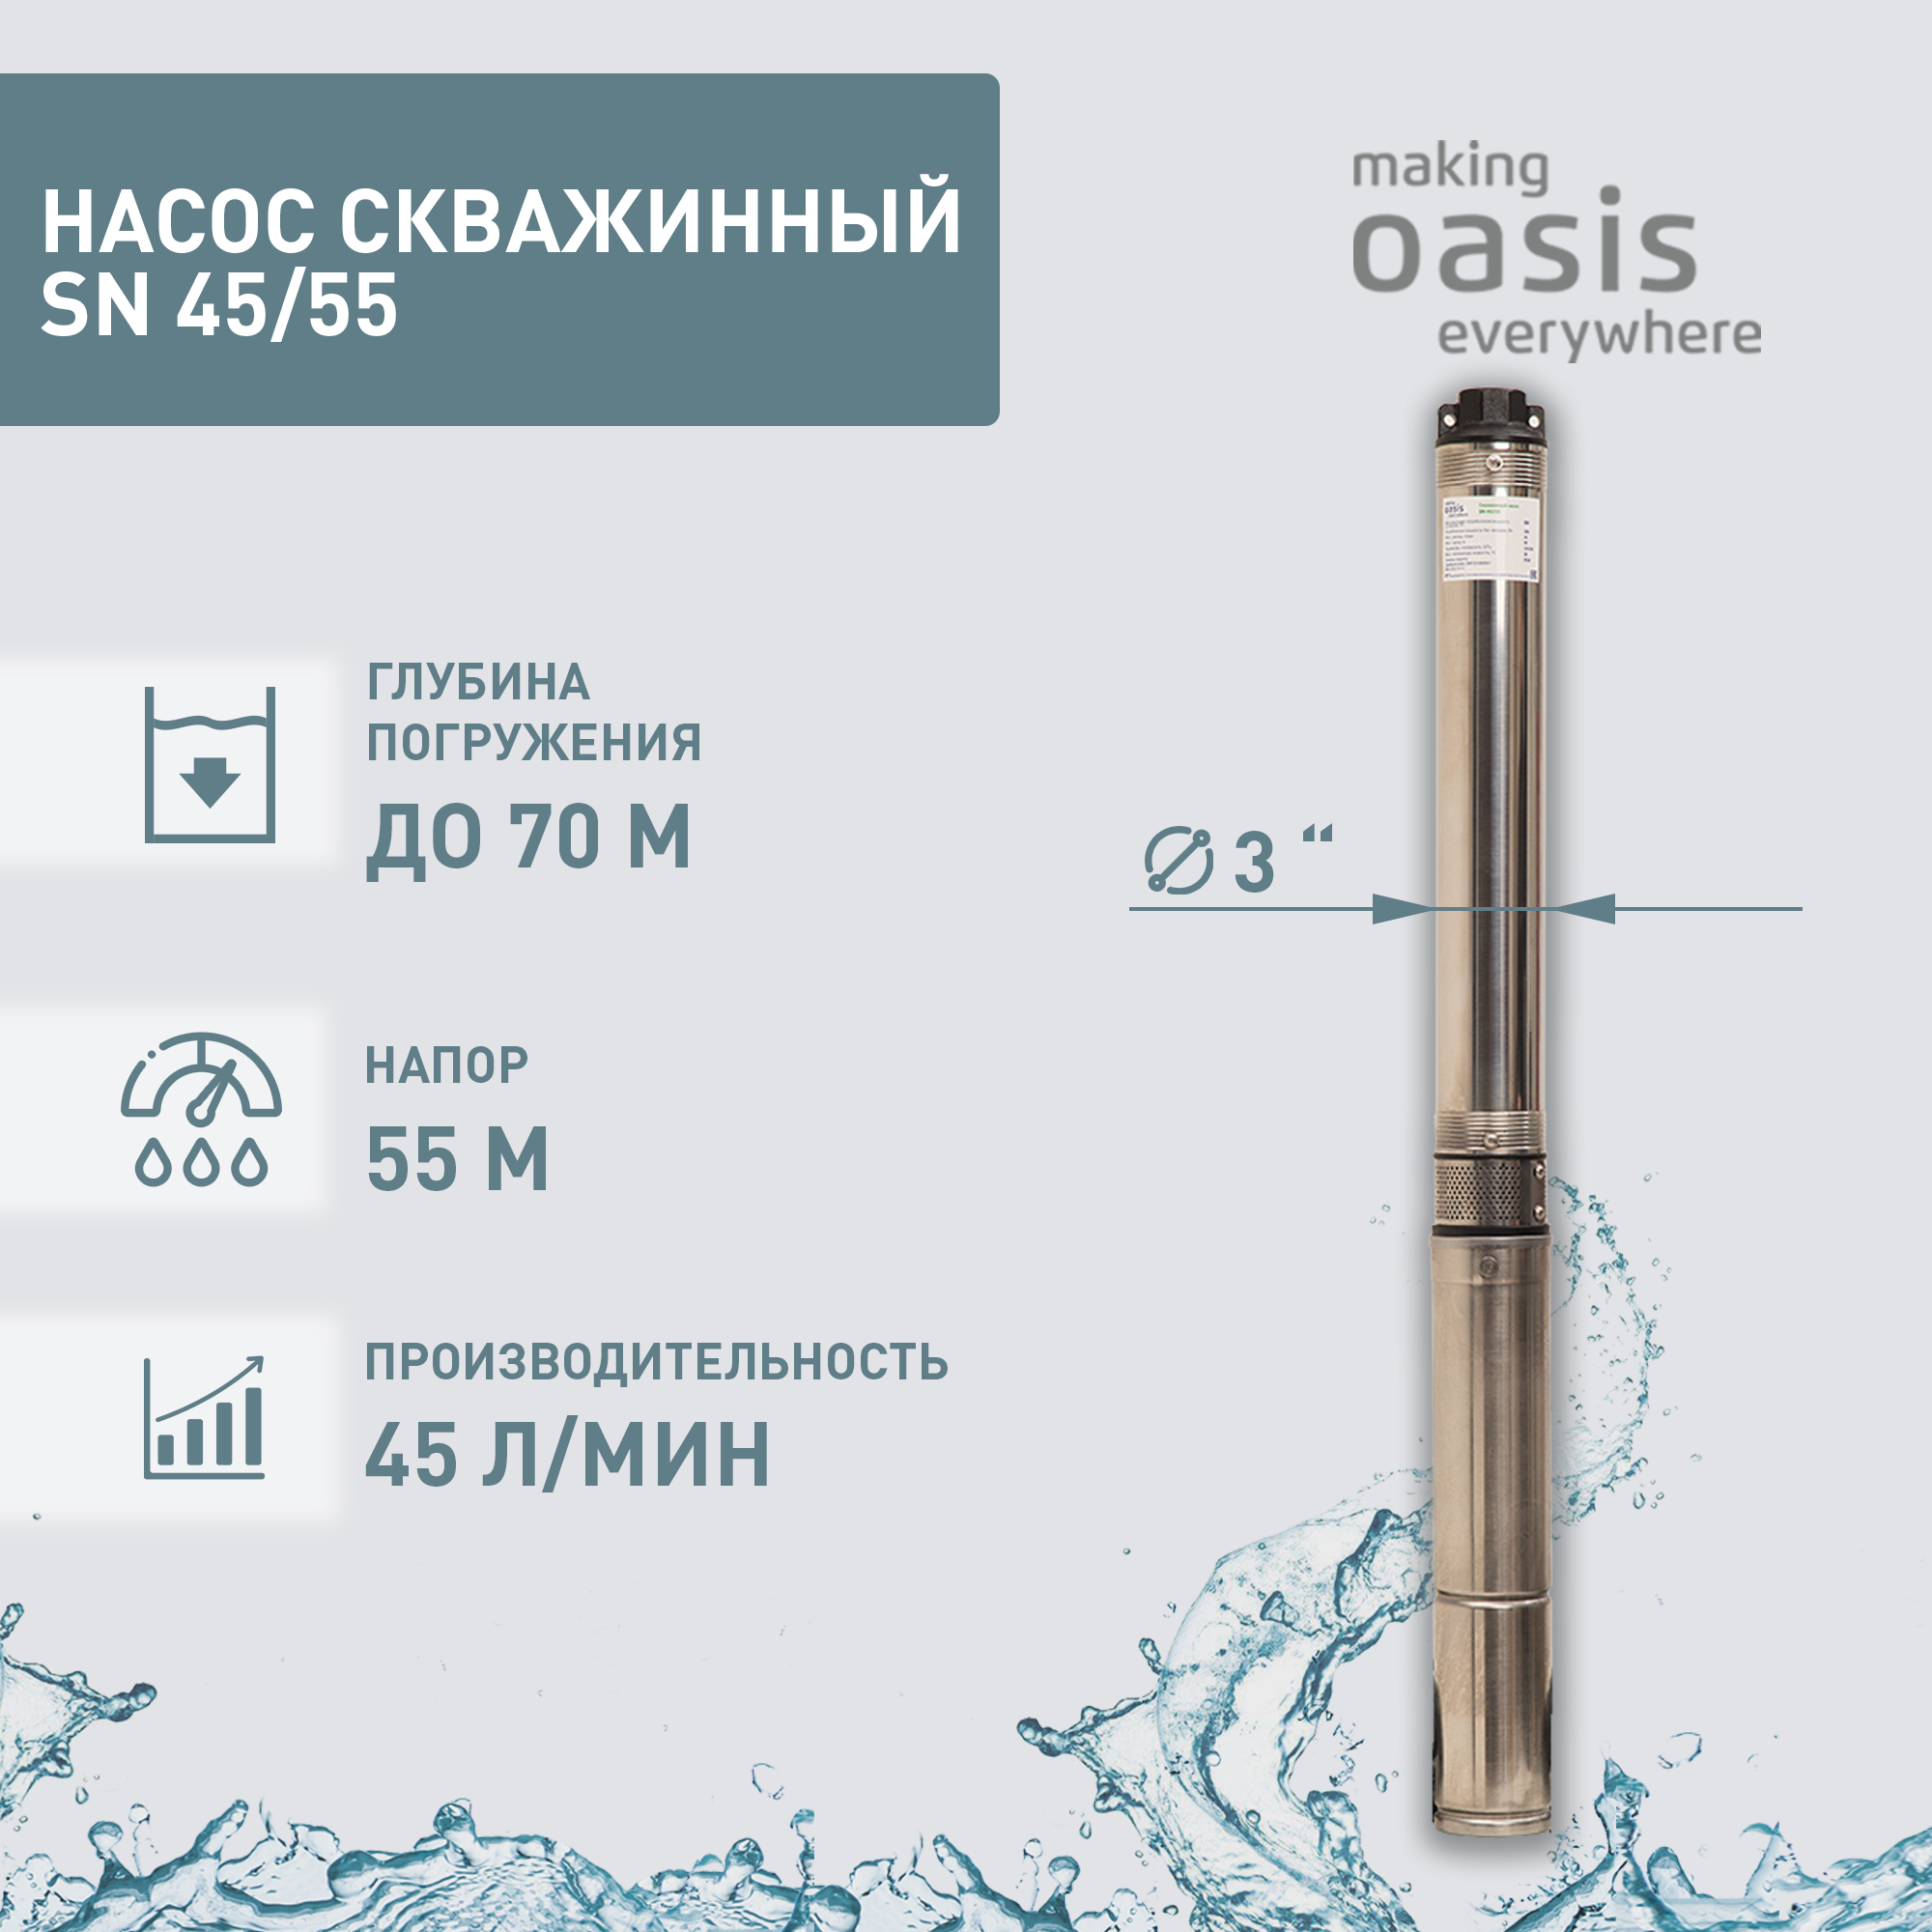 Насос погружной скважинный для воды водяной making OASIS everywhere SN 45/55 насос для повышения давления making oasis everywhere cp 15 9 4640130924591